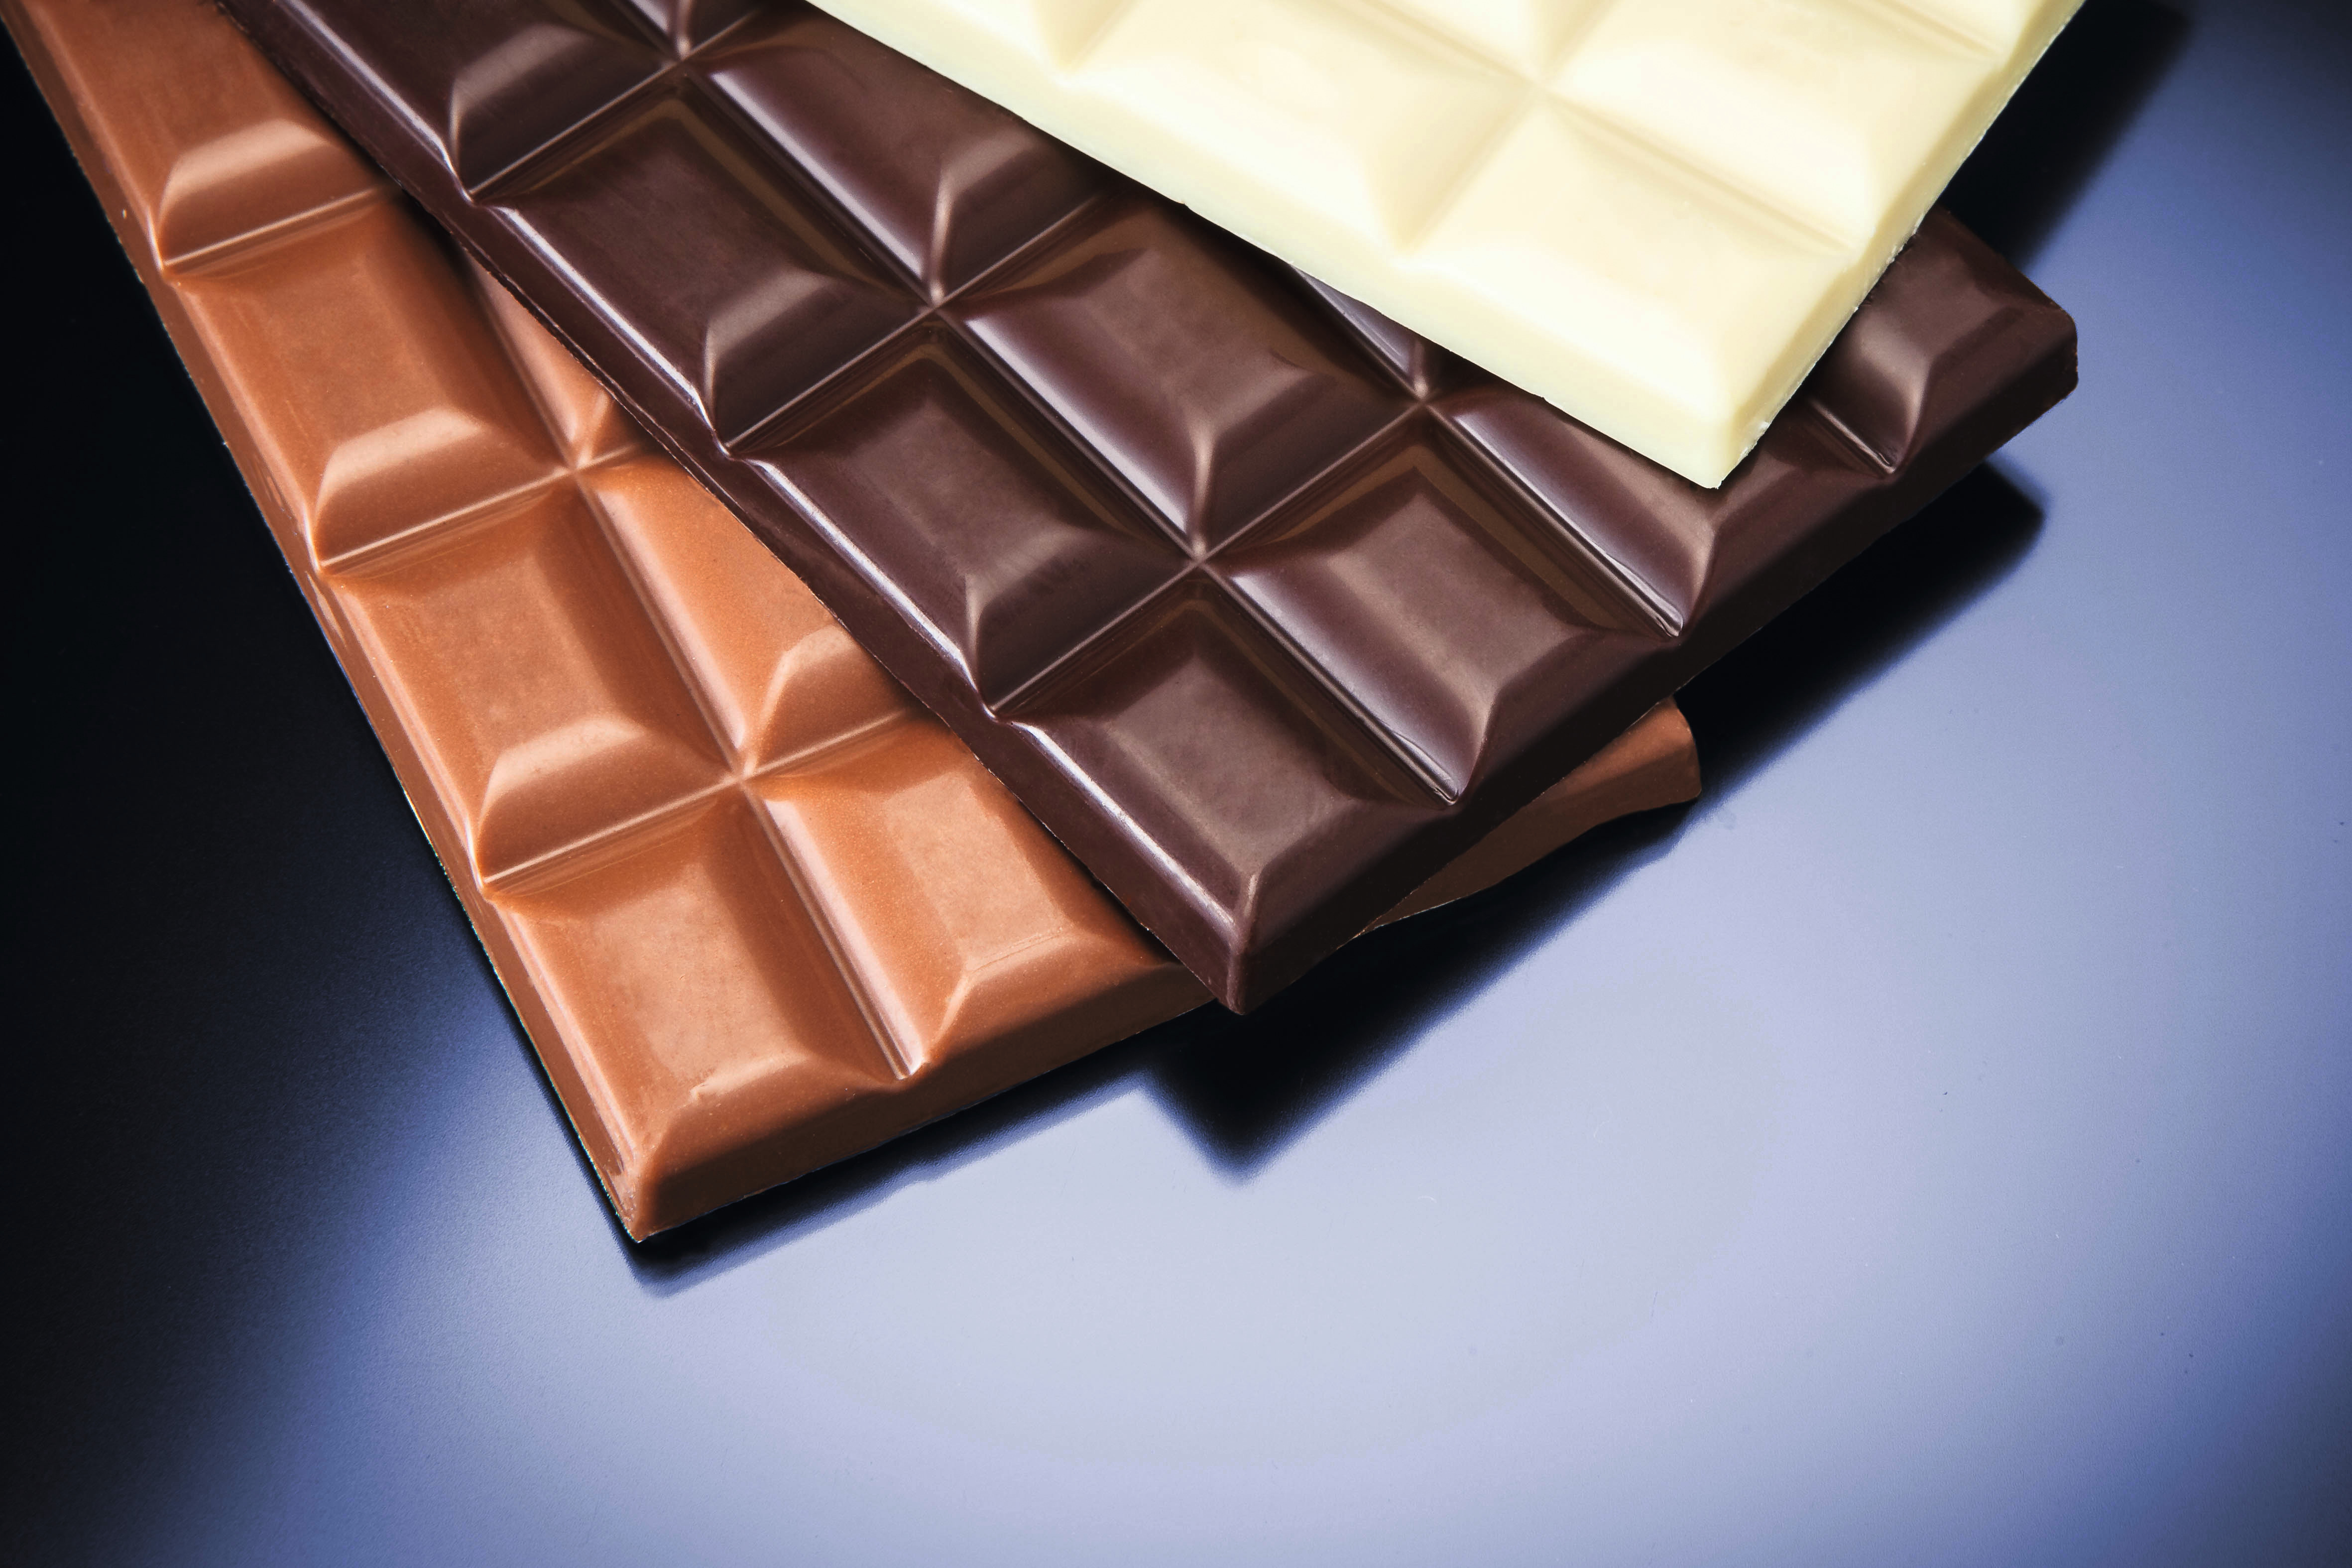 Image de présentation Le chocolat ! Comment fond-t-il et coule-t-il ?  